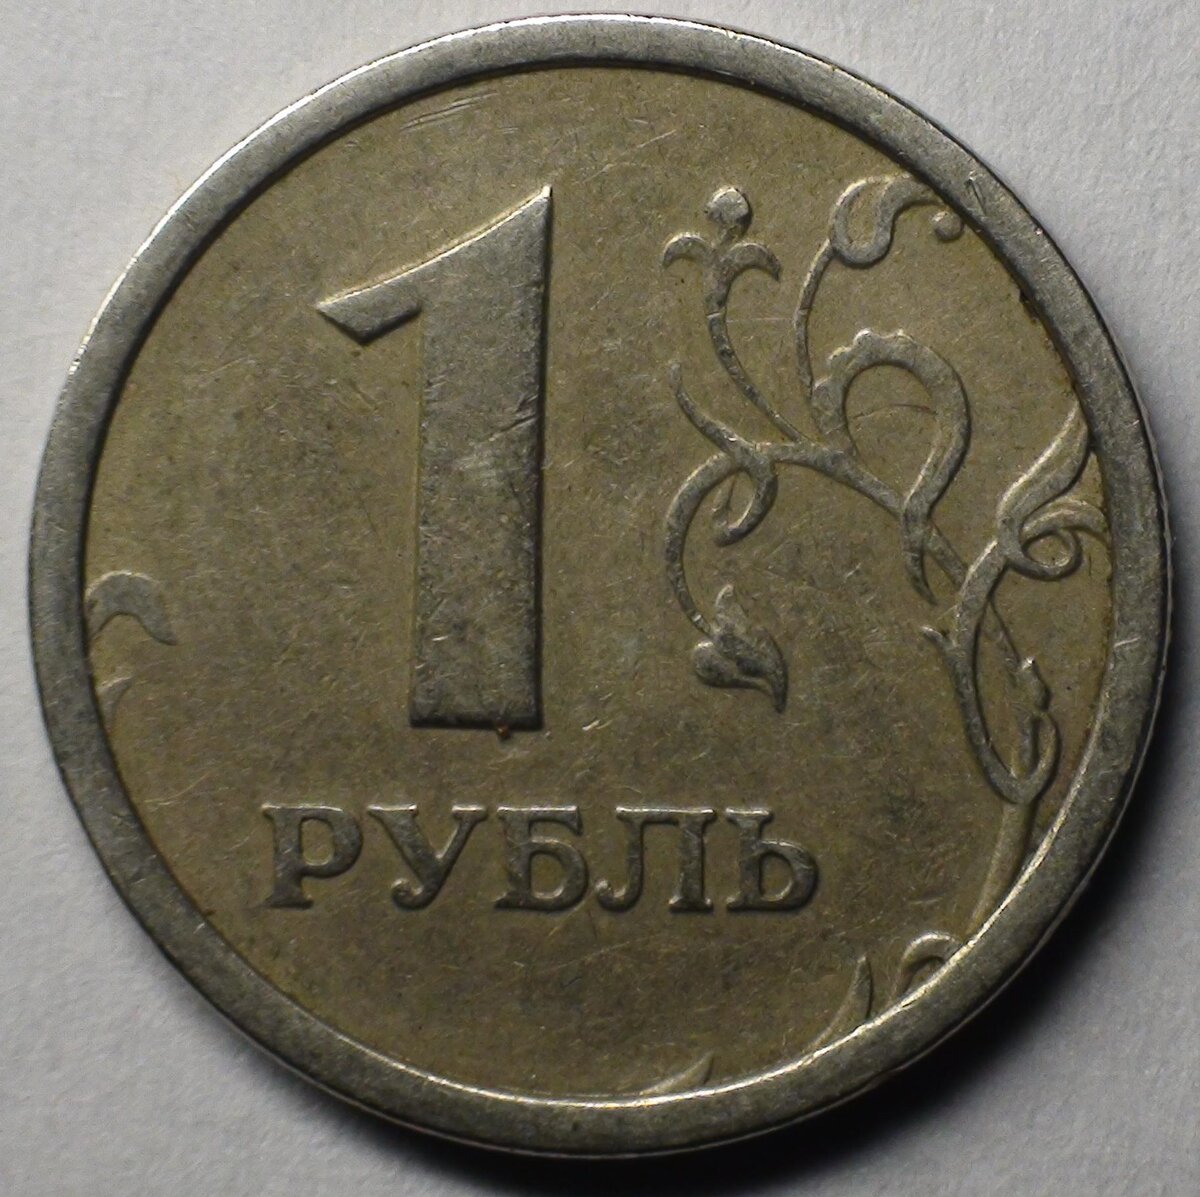 Ни для кого не секрет то, что среди монет современной России встречаются такие экземпляры, которые стоят однозначно выше своей номинальной стоимости.-3